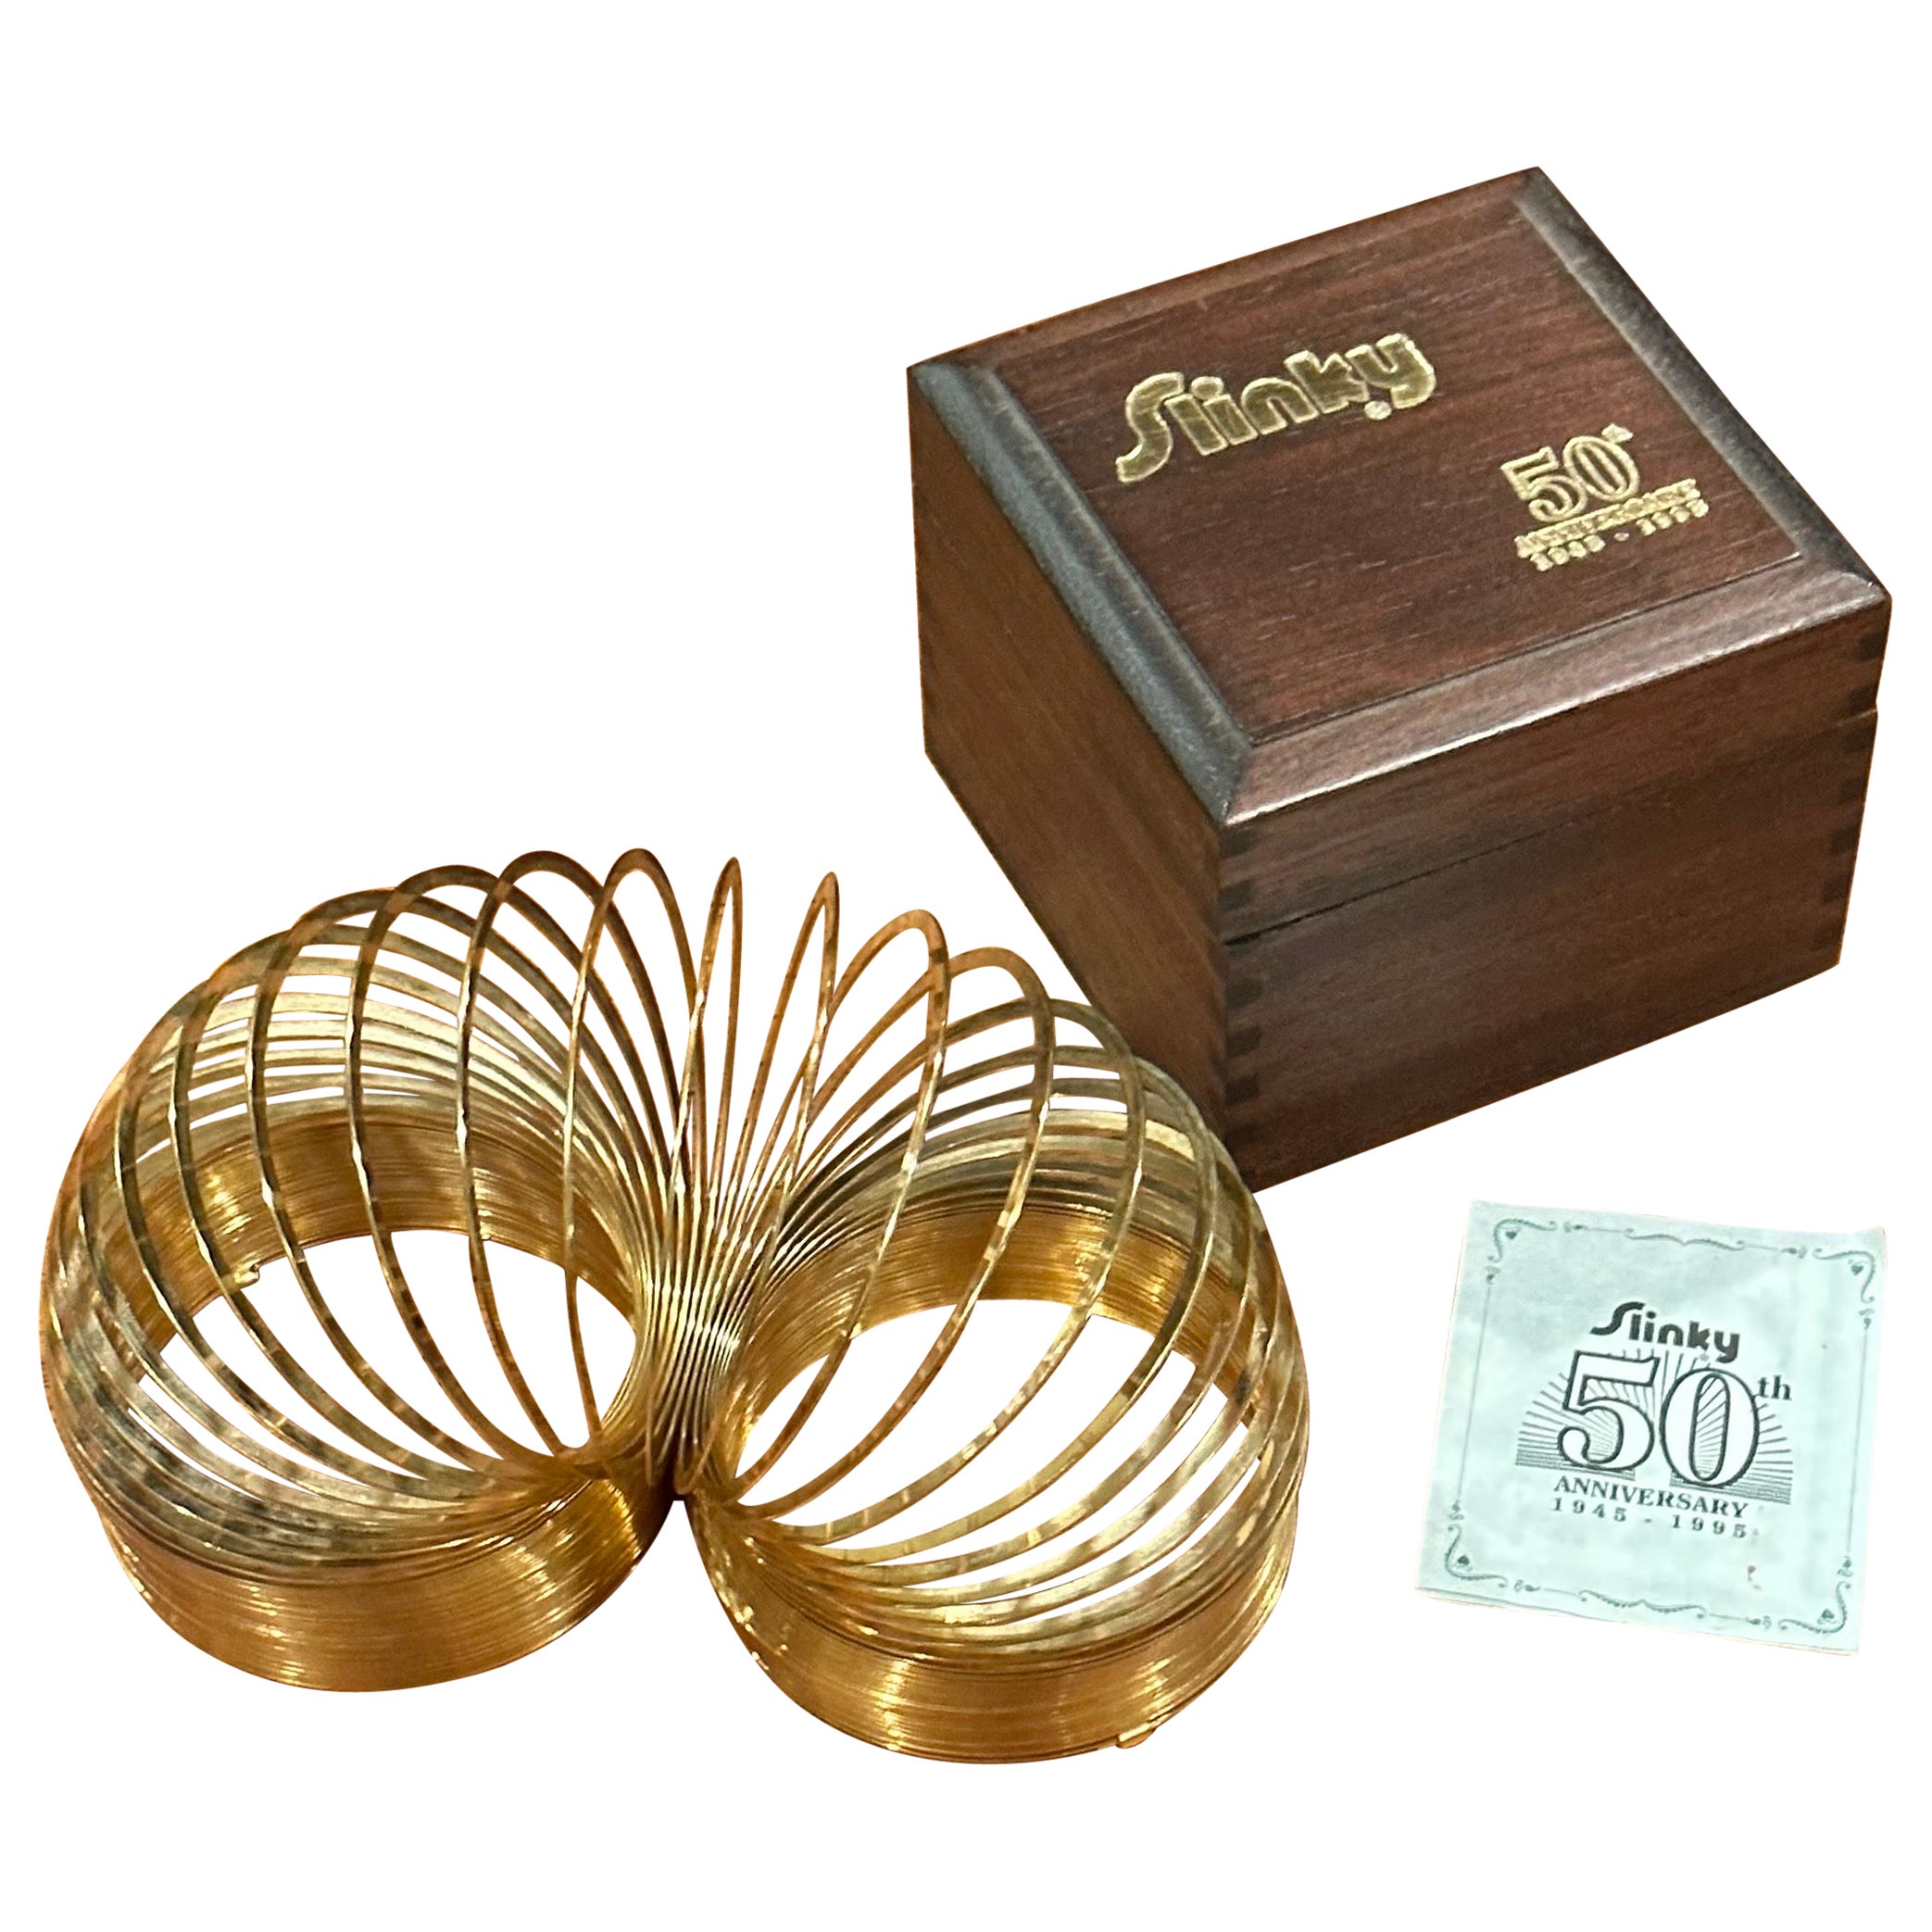 Vergoldetes Slinky-Spielzeug in Holzschachtel zum 50. Jahrestag im Angebot